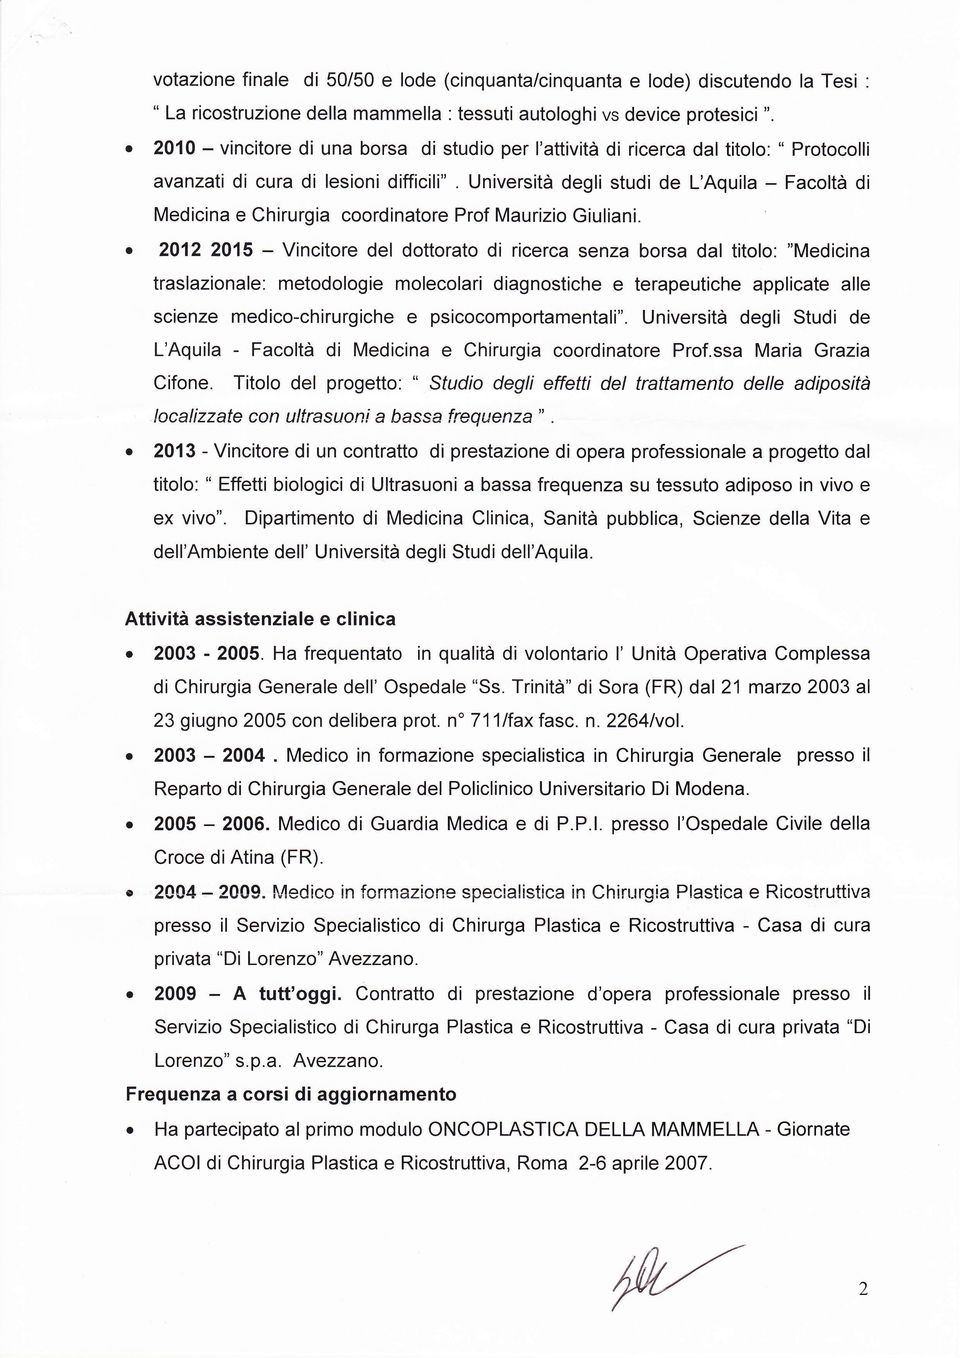 Università degli studi de L'Aquila - Facoltà di Medicina e Chirurgia coordinatore Prof Maurizio Giuliani.